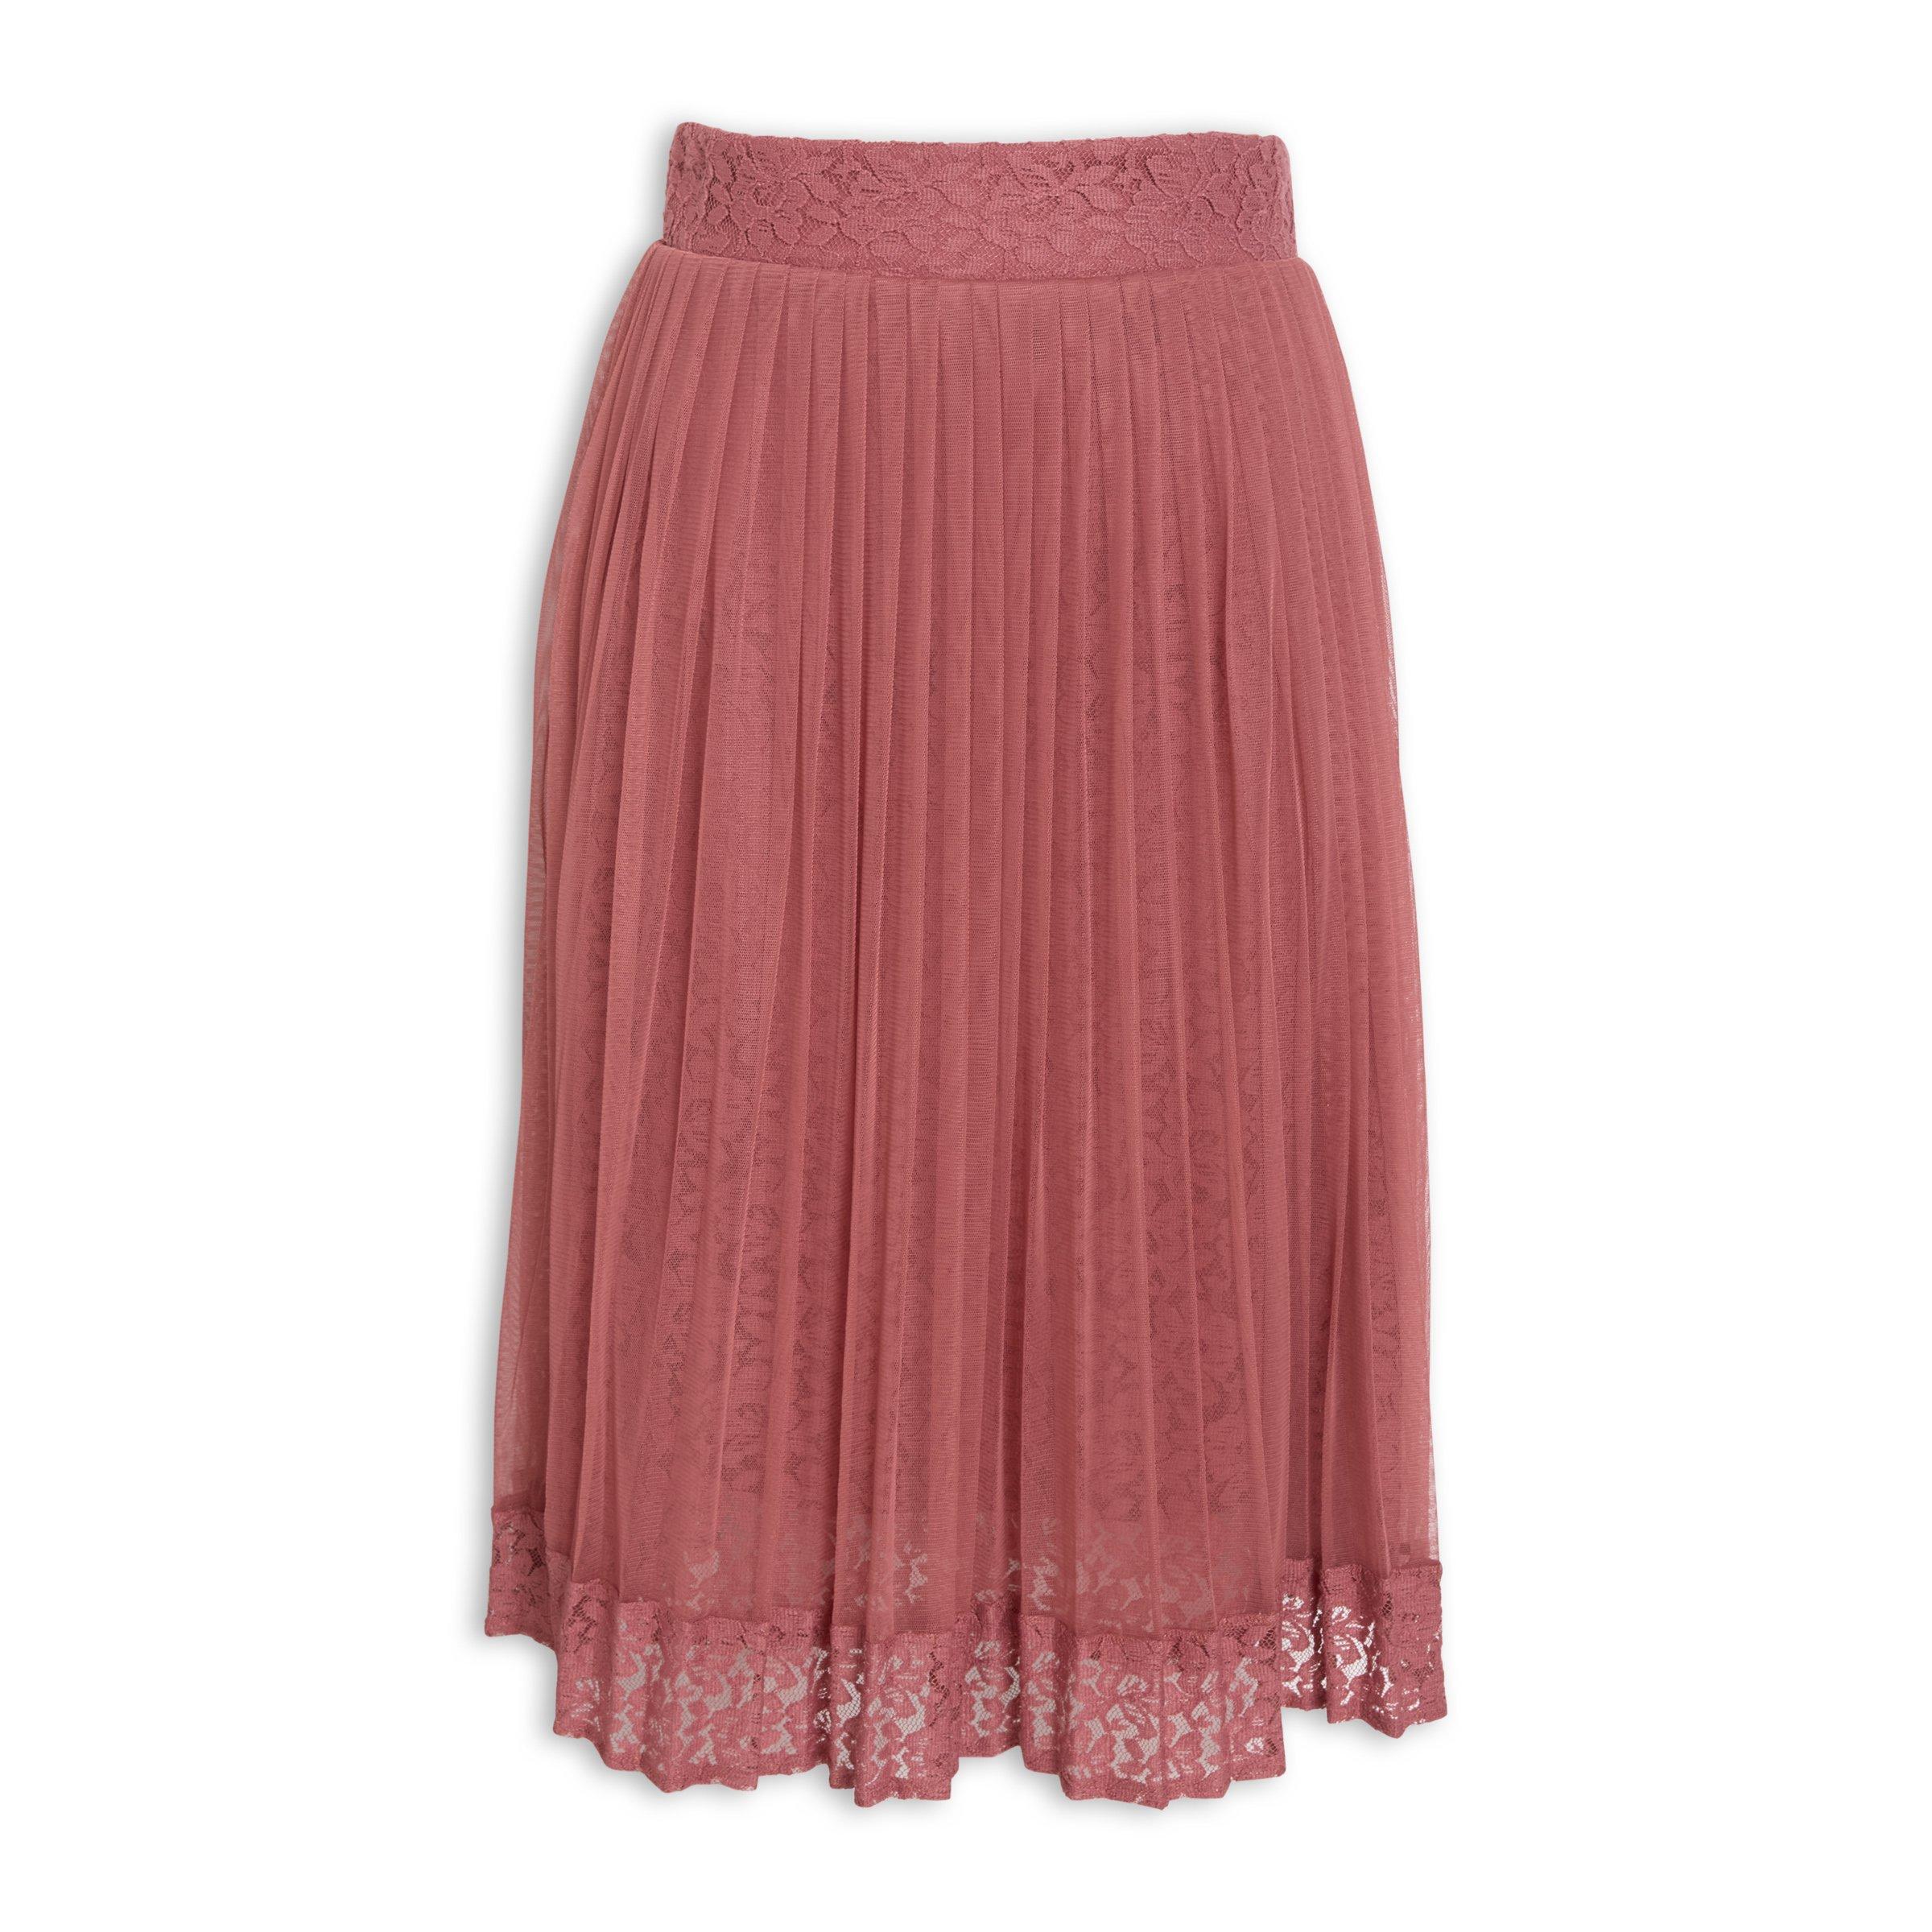 Buy Truworths Pale Pink Full Mesh Skirt Online | Truworths